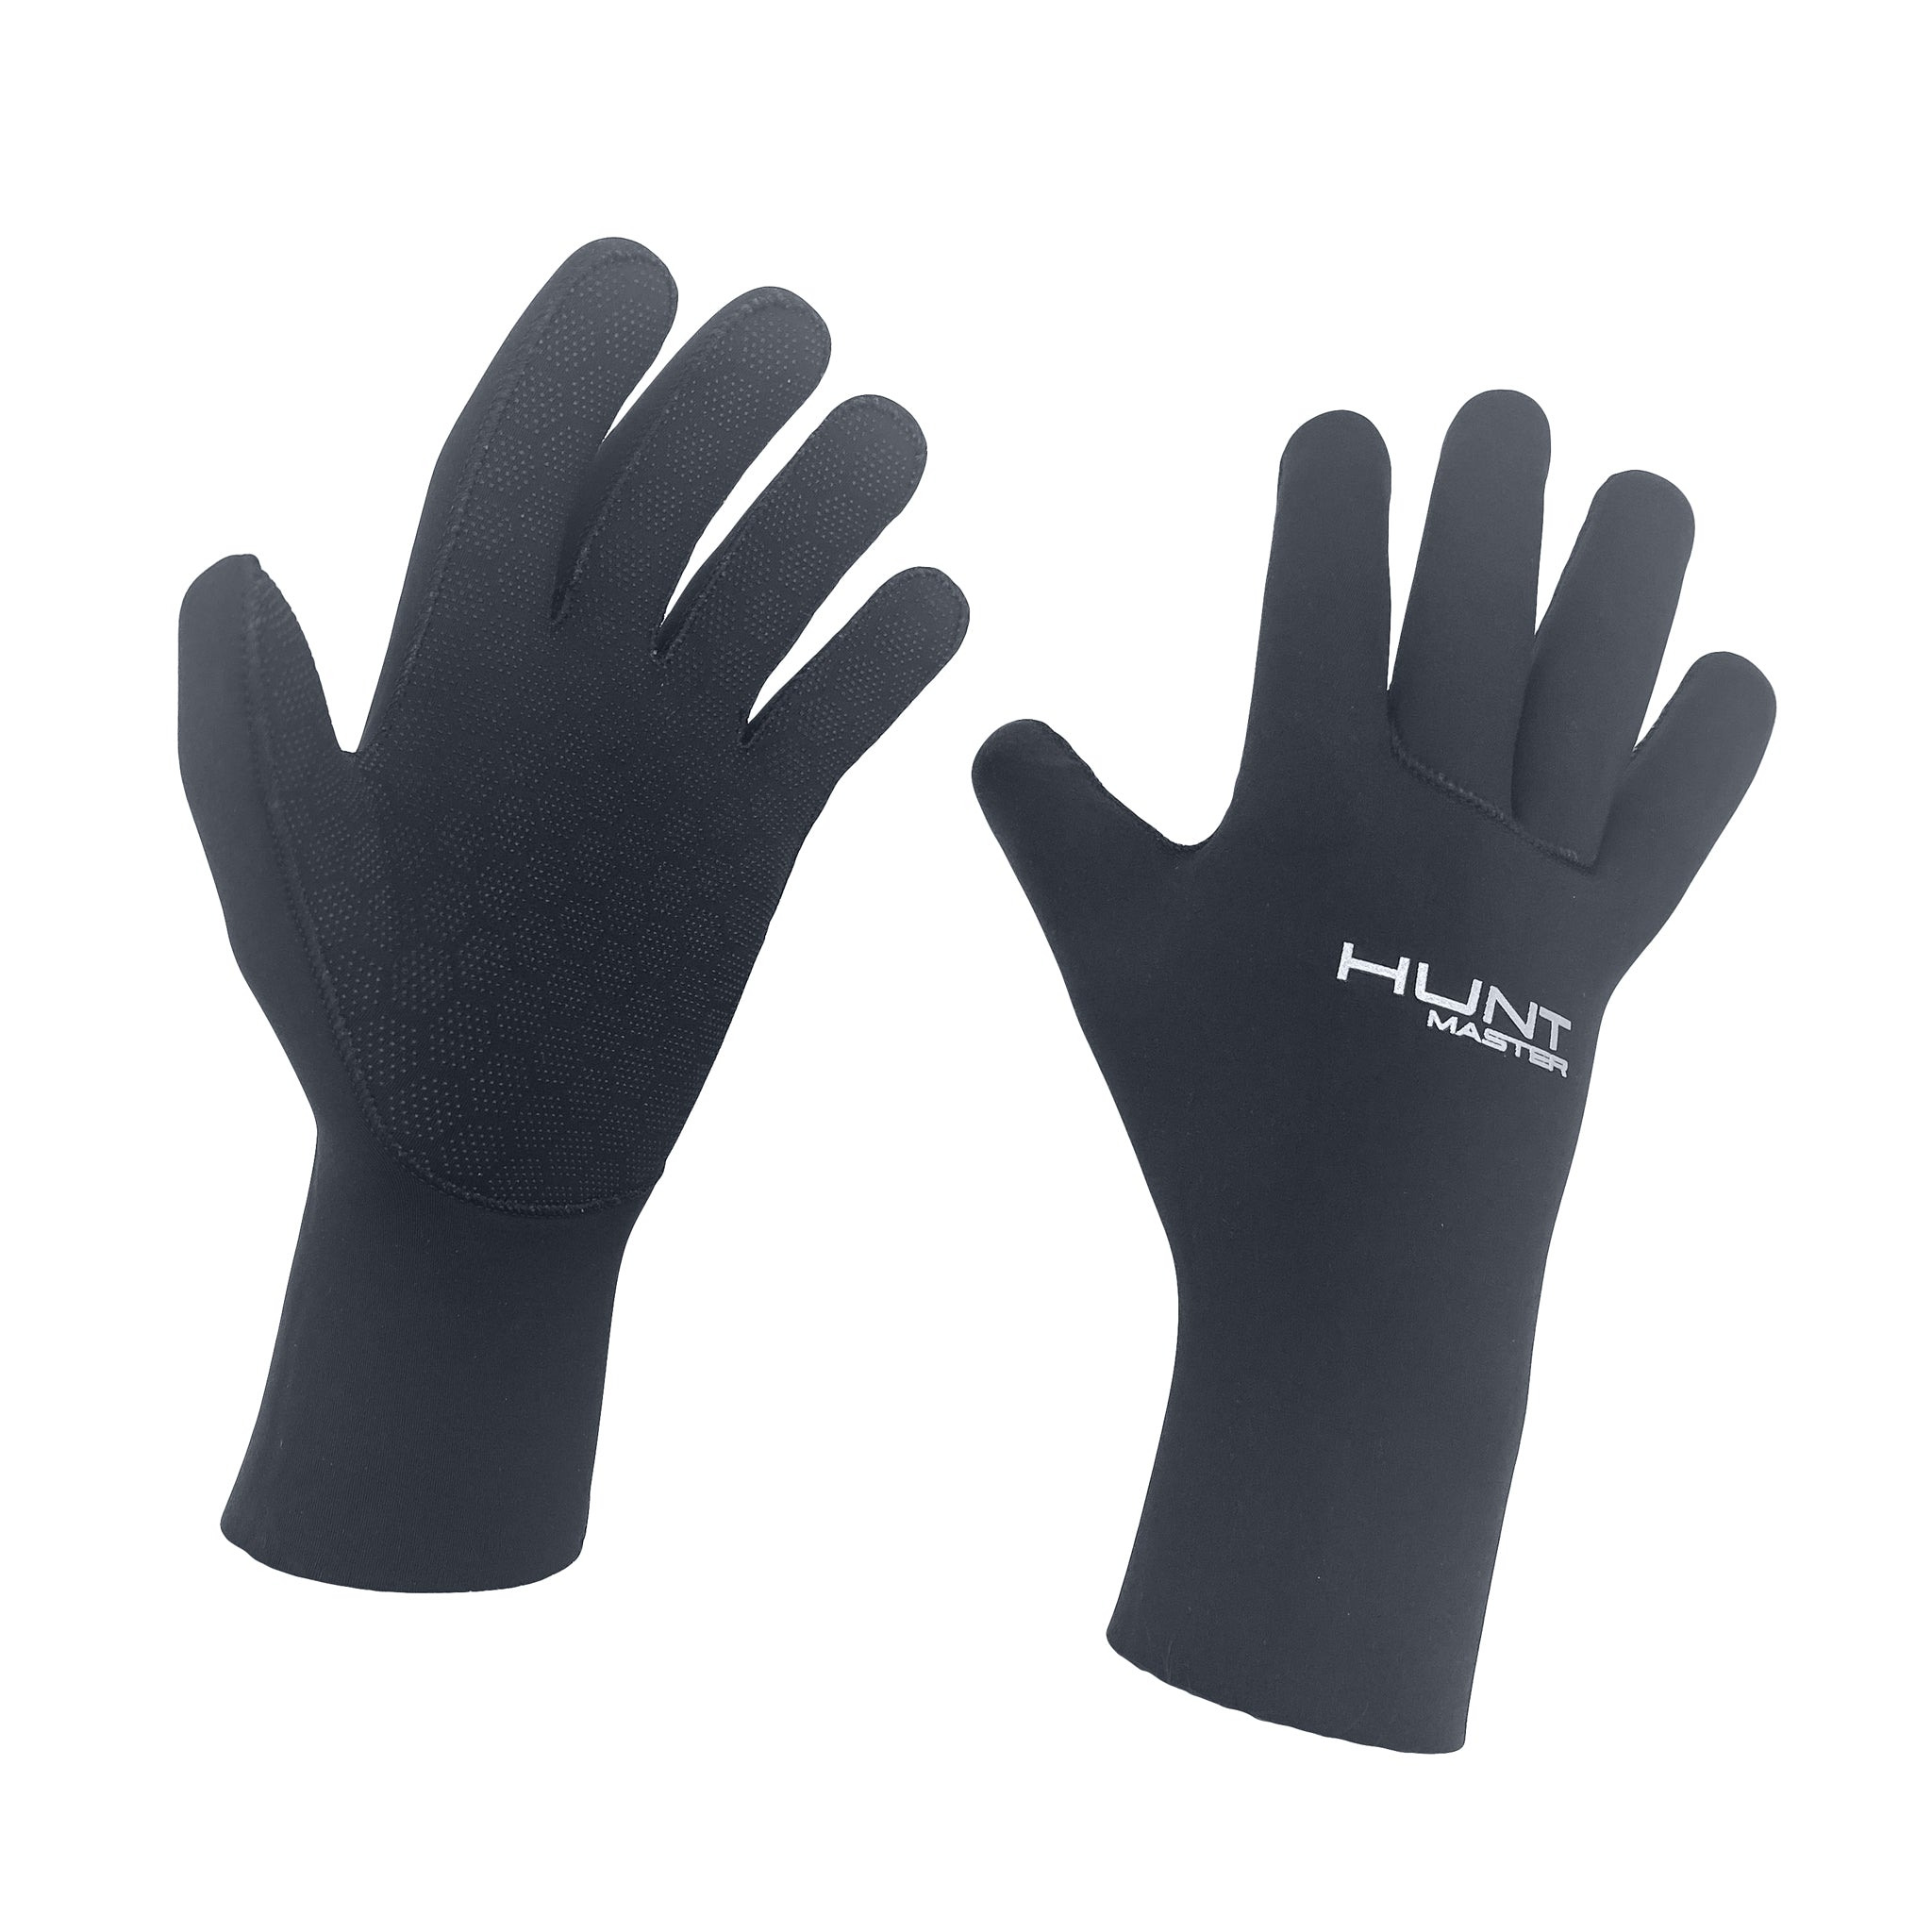 ELANORA Neoprene Dive Gloves - 3.5mm - Black